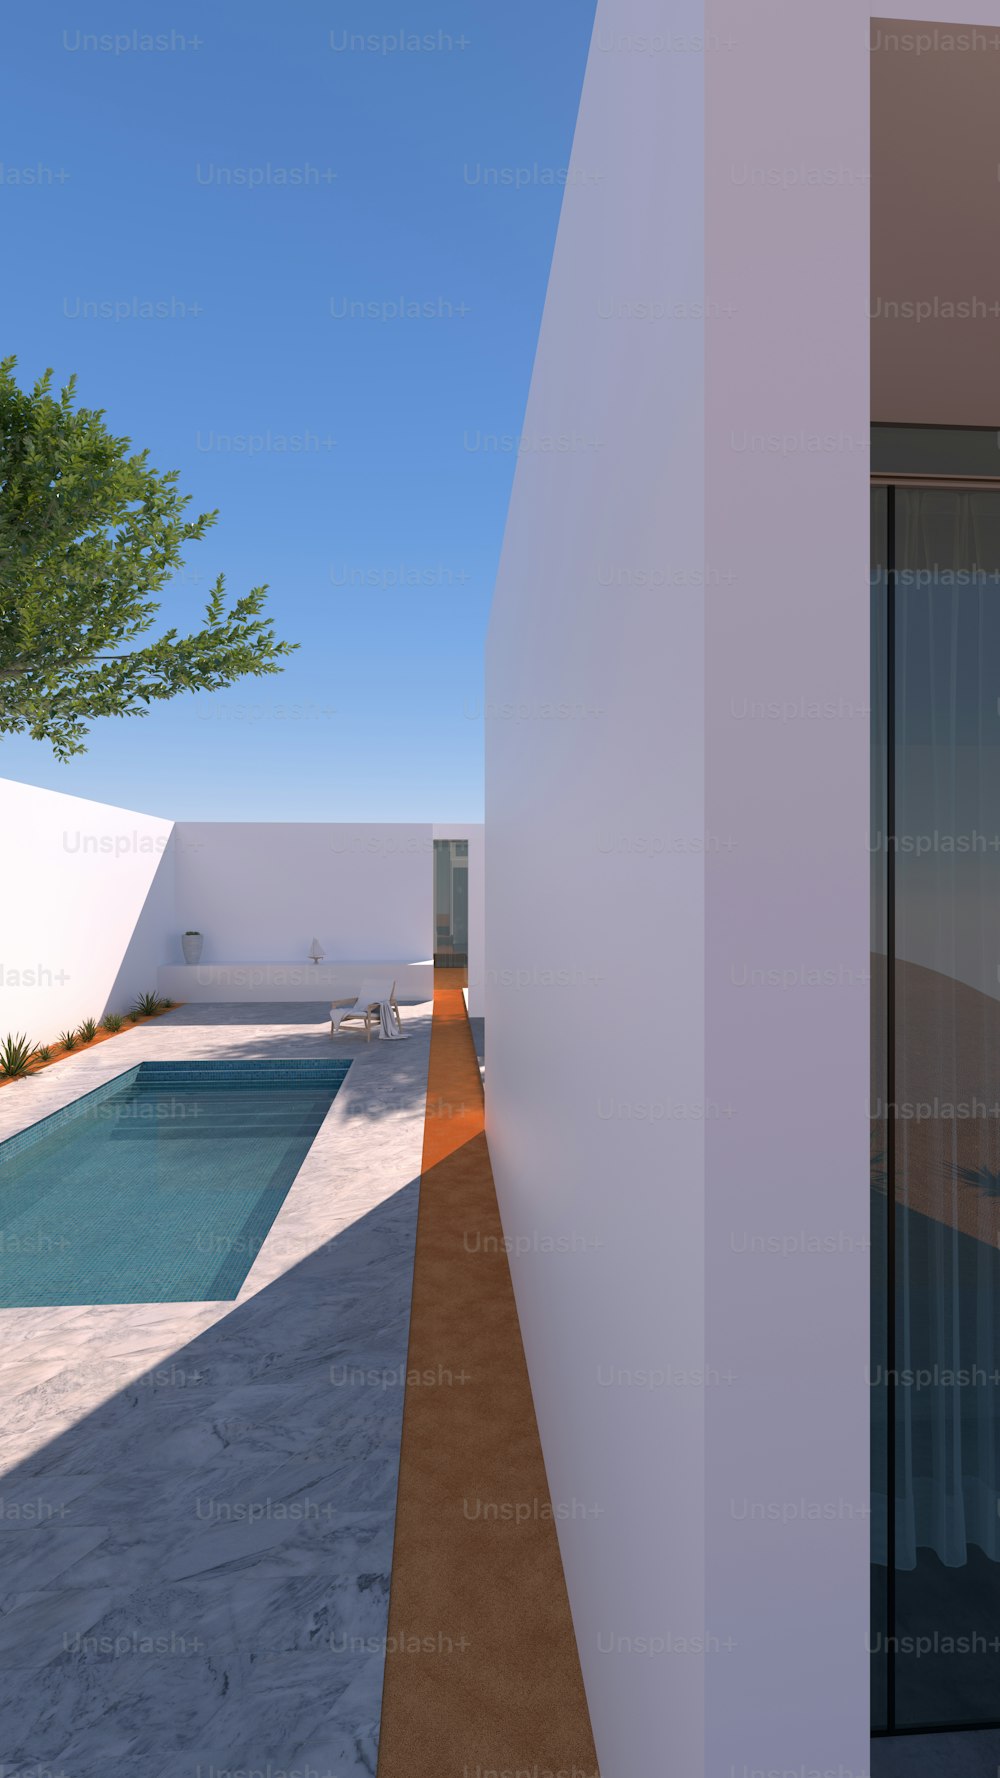 Un rendering 3D di una piscina accanto a una casa